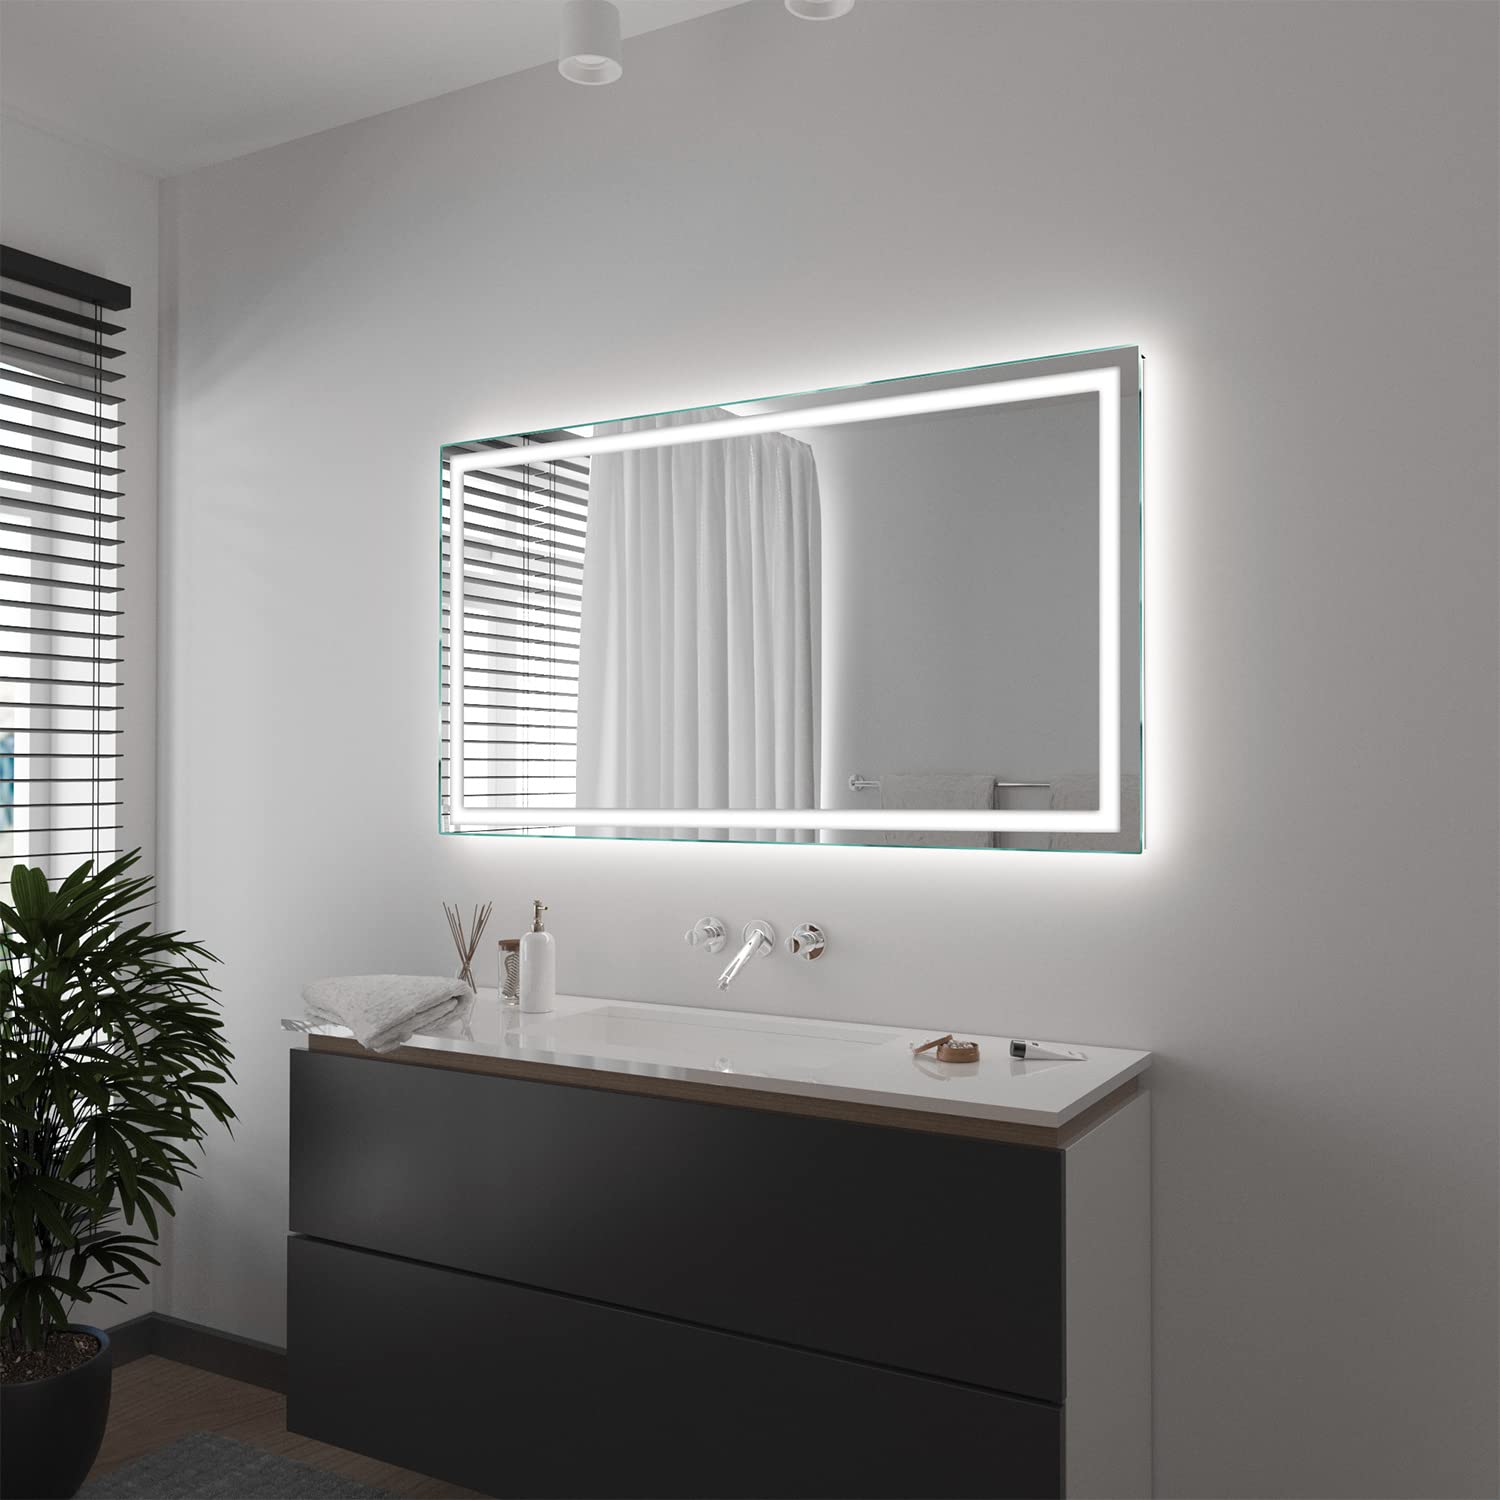 SARAR Wandspiegel mit rundum LED-Beleuchtung 90x60 cm Made in Germany Toulon eckiger Badspiegel Spiegel mit Beleuchtung Badezimmerspiegel